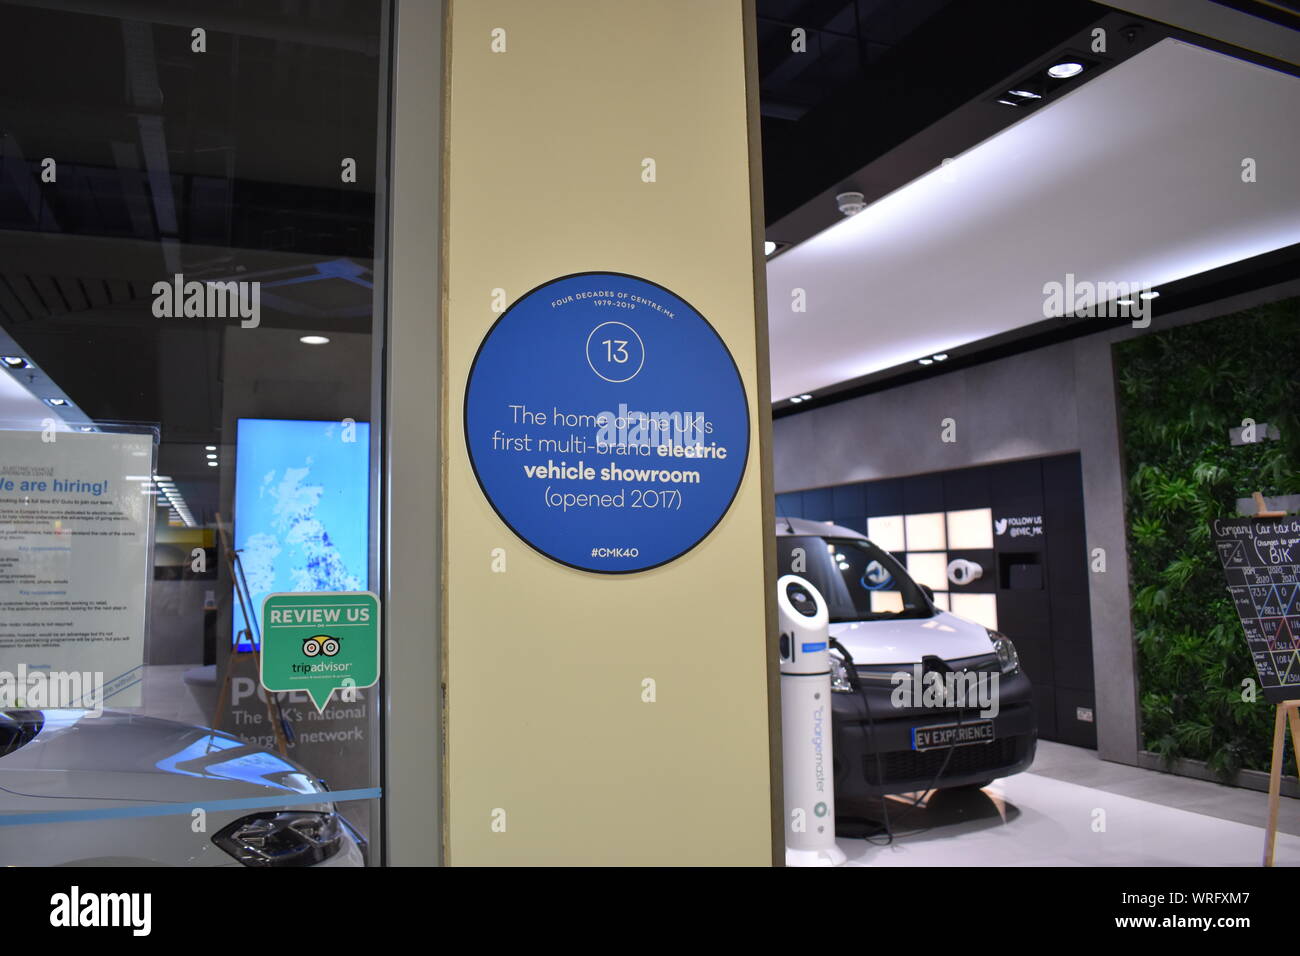 Une blue plaque trail donne quarante faits sur fabuleux center:mk. Cette plaque marque l'ouverture de la UK's premier véhicule électrique multi-marques de montre. Banque D'Images